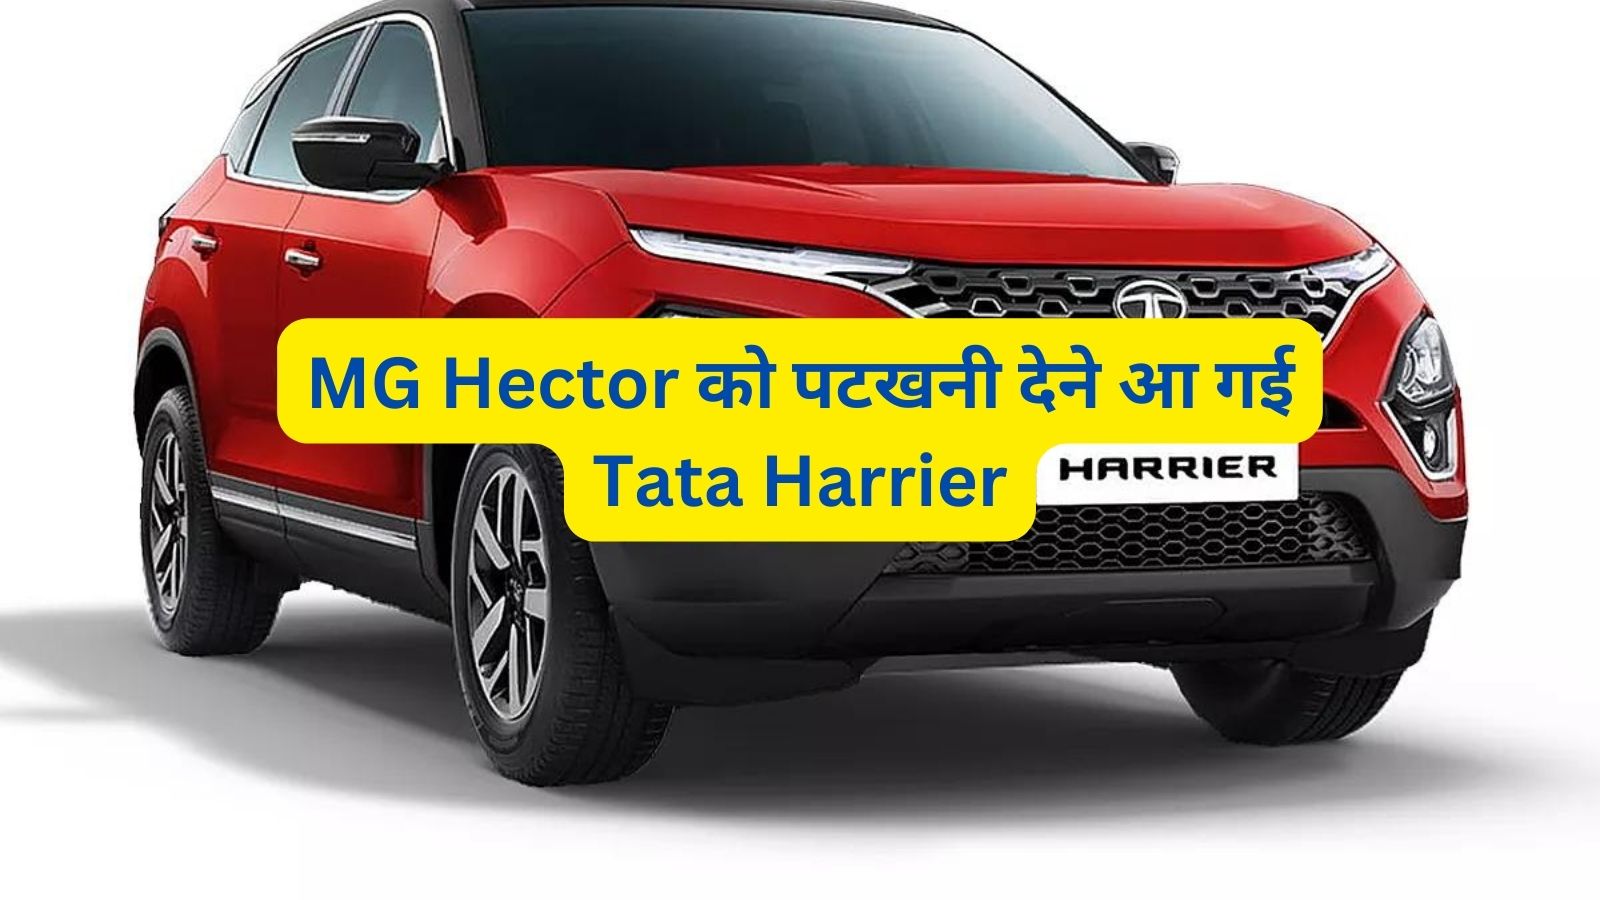 MG Hector को पटखनी देने आ गई Tata Harrier,जानिए इसके फीचर्स और दमदार इंजन के बारे मे